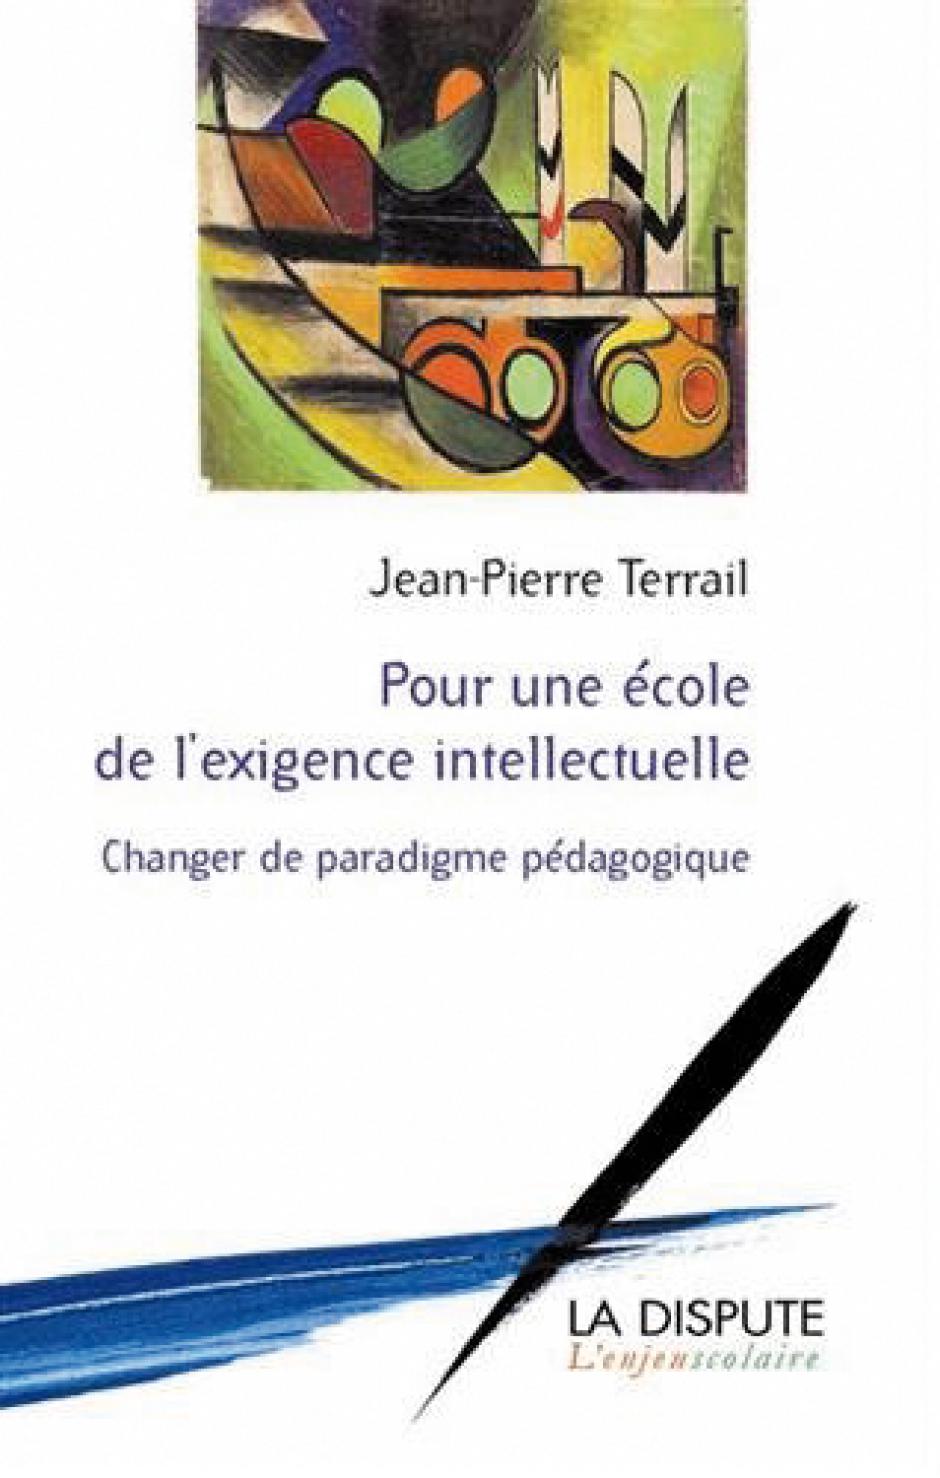 Pour une école de l'exigence intellectuelle  Changer de paradigme pédagogique, Jean-Pierre Terrail